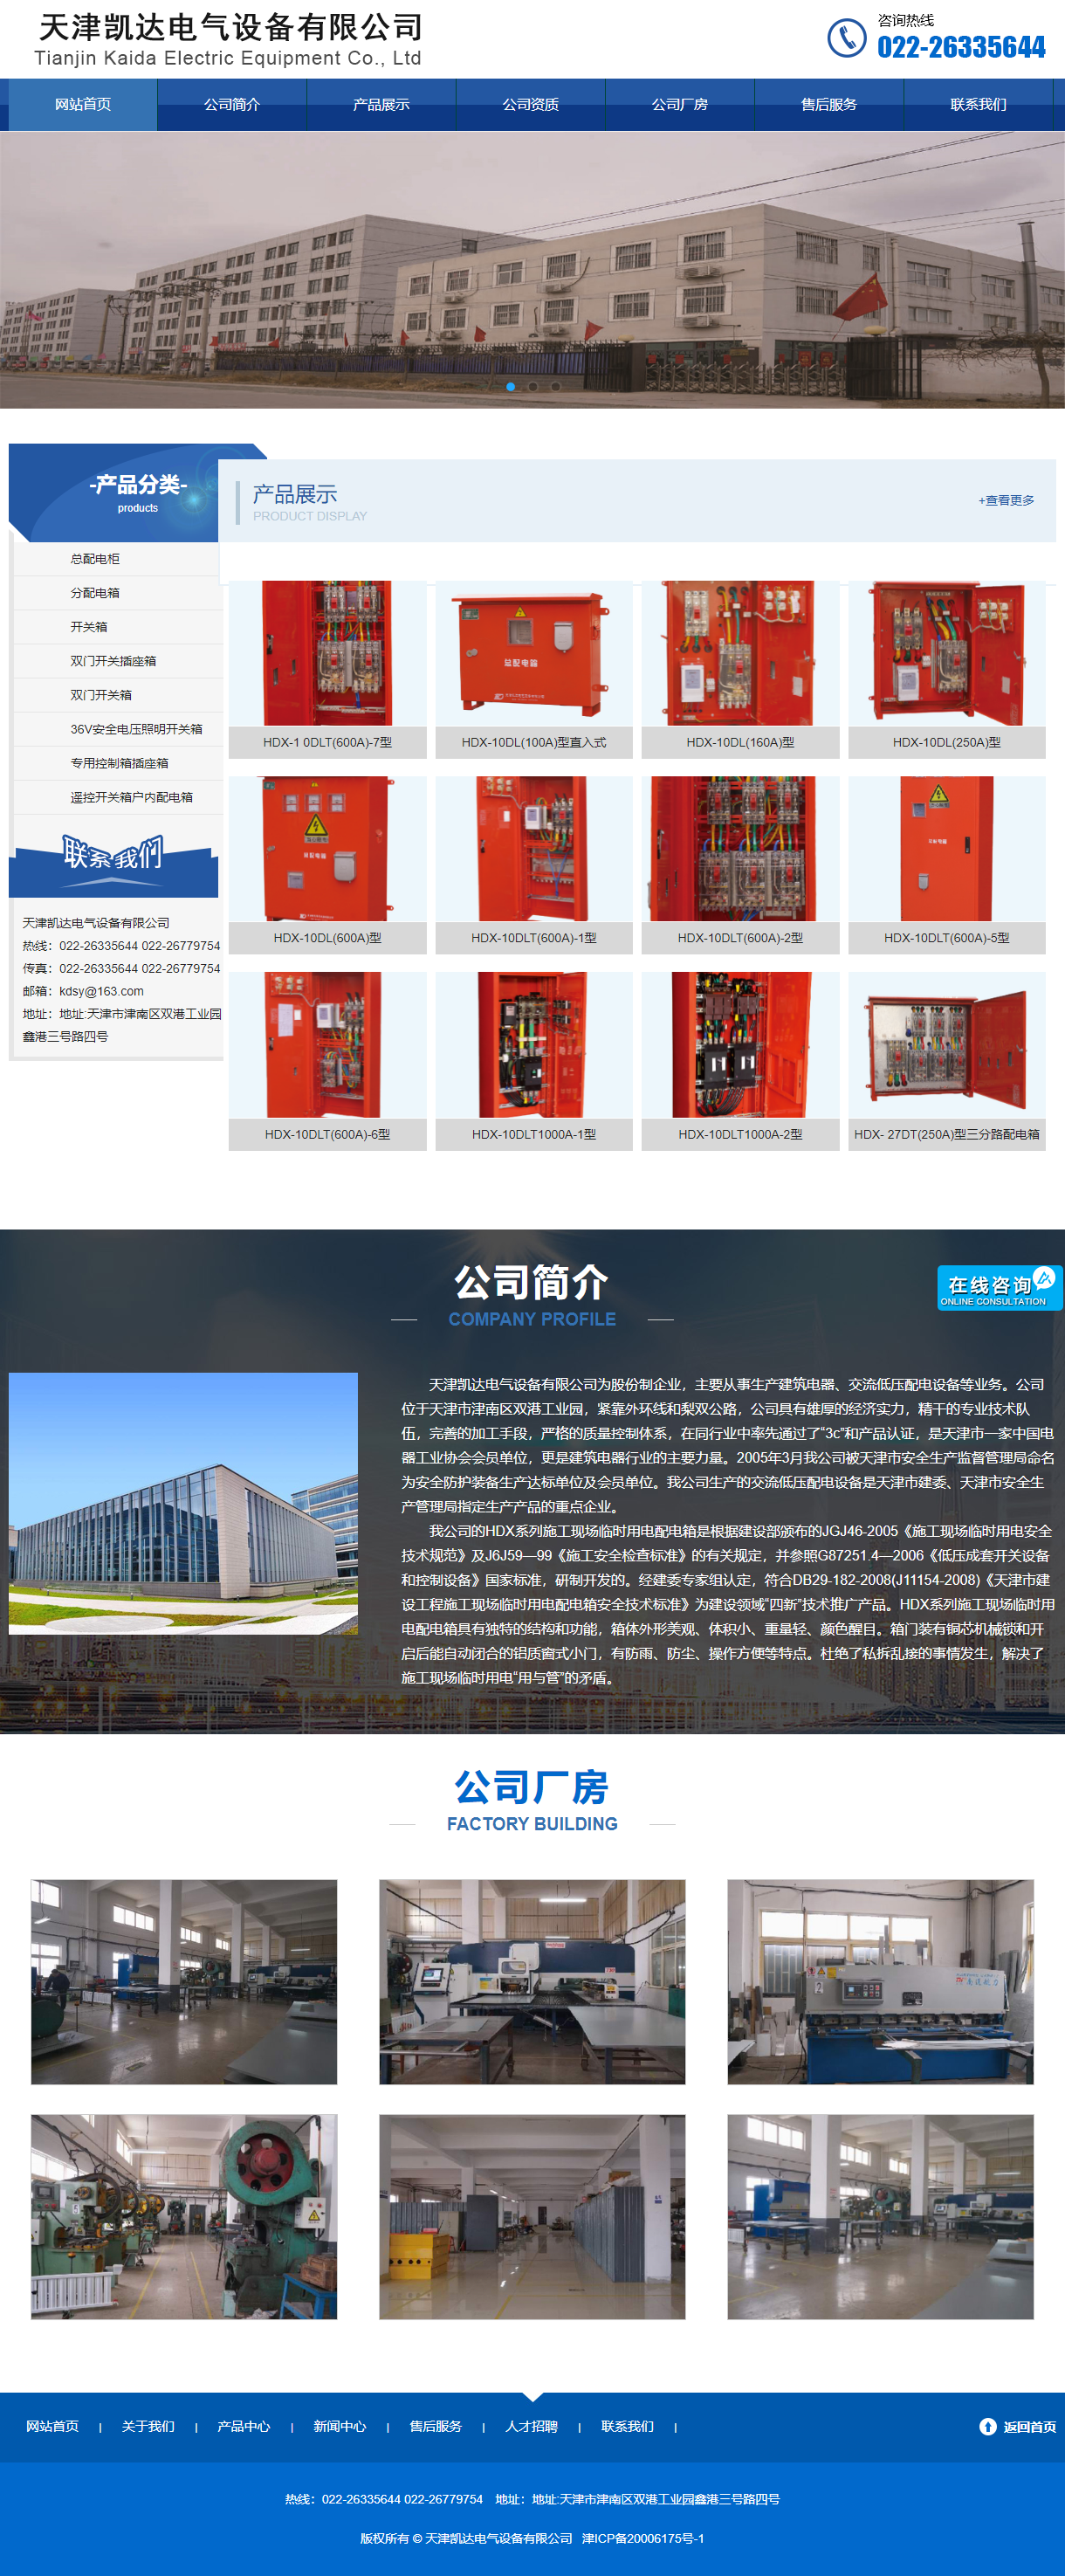 天津凯达电气设备有限公司网站案例